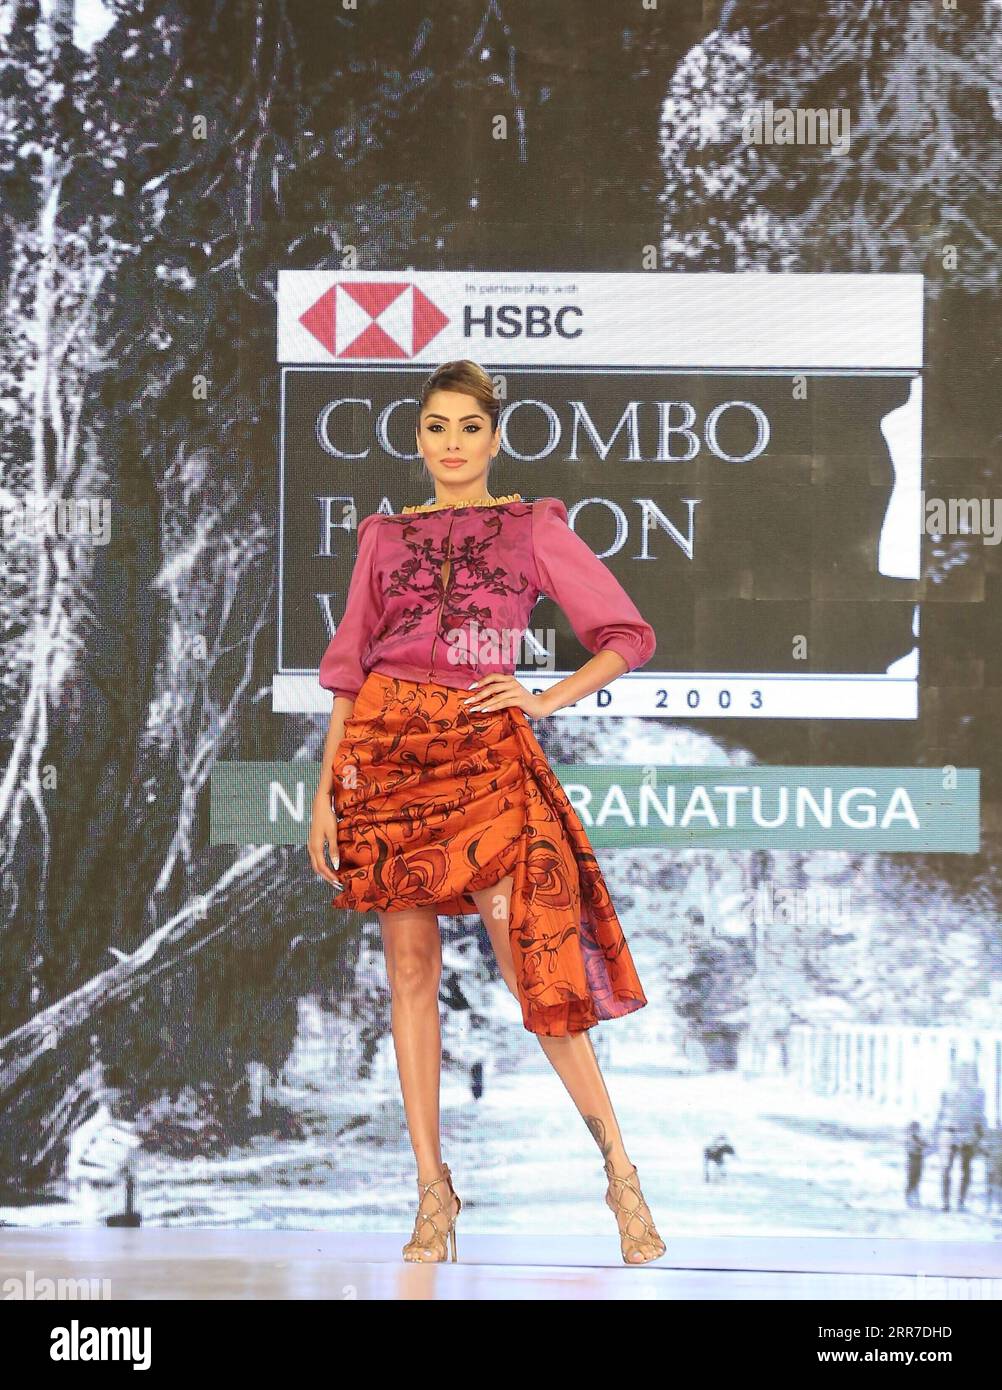 210326 -- COLOMBO, 26. März 2021 -- Ein Modell präsentiert eine Kreation während der Colombo Fashion Week in Colombo, Sri Lanka, 25. März 2021. Die Colombo Fashion Week Summer Edition startete am 25. März in Colombo nach strengen Gesundheitsrichtlinien. 21 neue Modedesigner und führende lokale Designer nahmen an der dreitägigen Veranstaltung Teil. Die 2003 gegründete Colombo Fashion Week findet 2021 zum 18. Mal statt. Foto von /Xinhua SRI LANKA-COLOMBO-FASHION WEEK AjtihxPerera PUBLICATIONxNOTxINxCHN Stockfoto